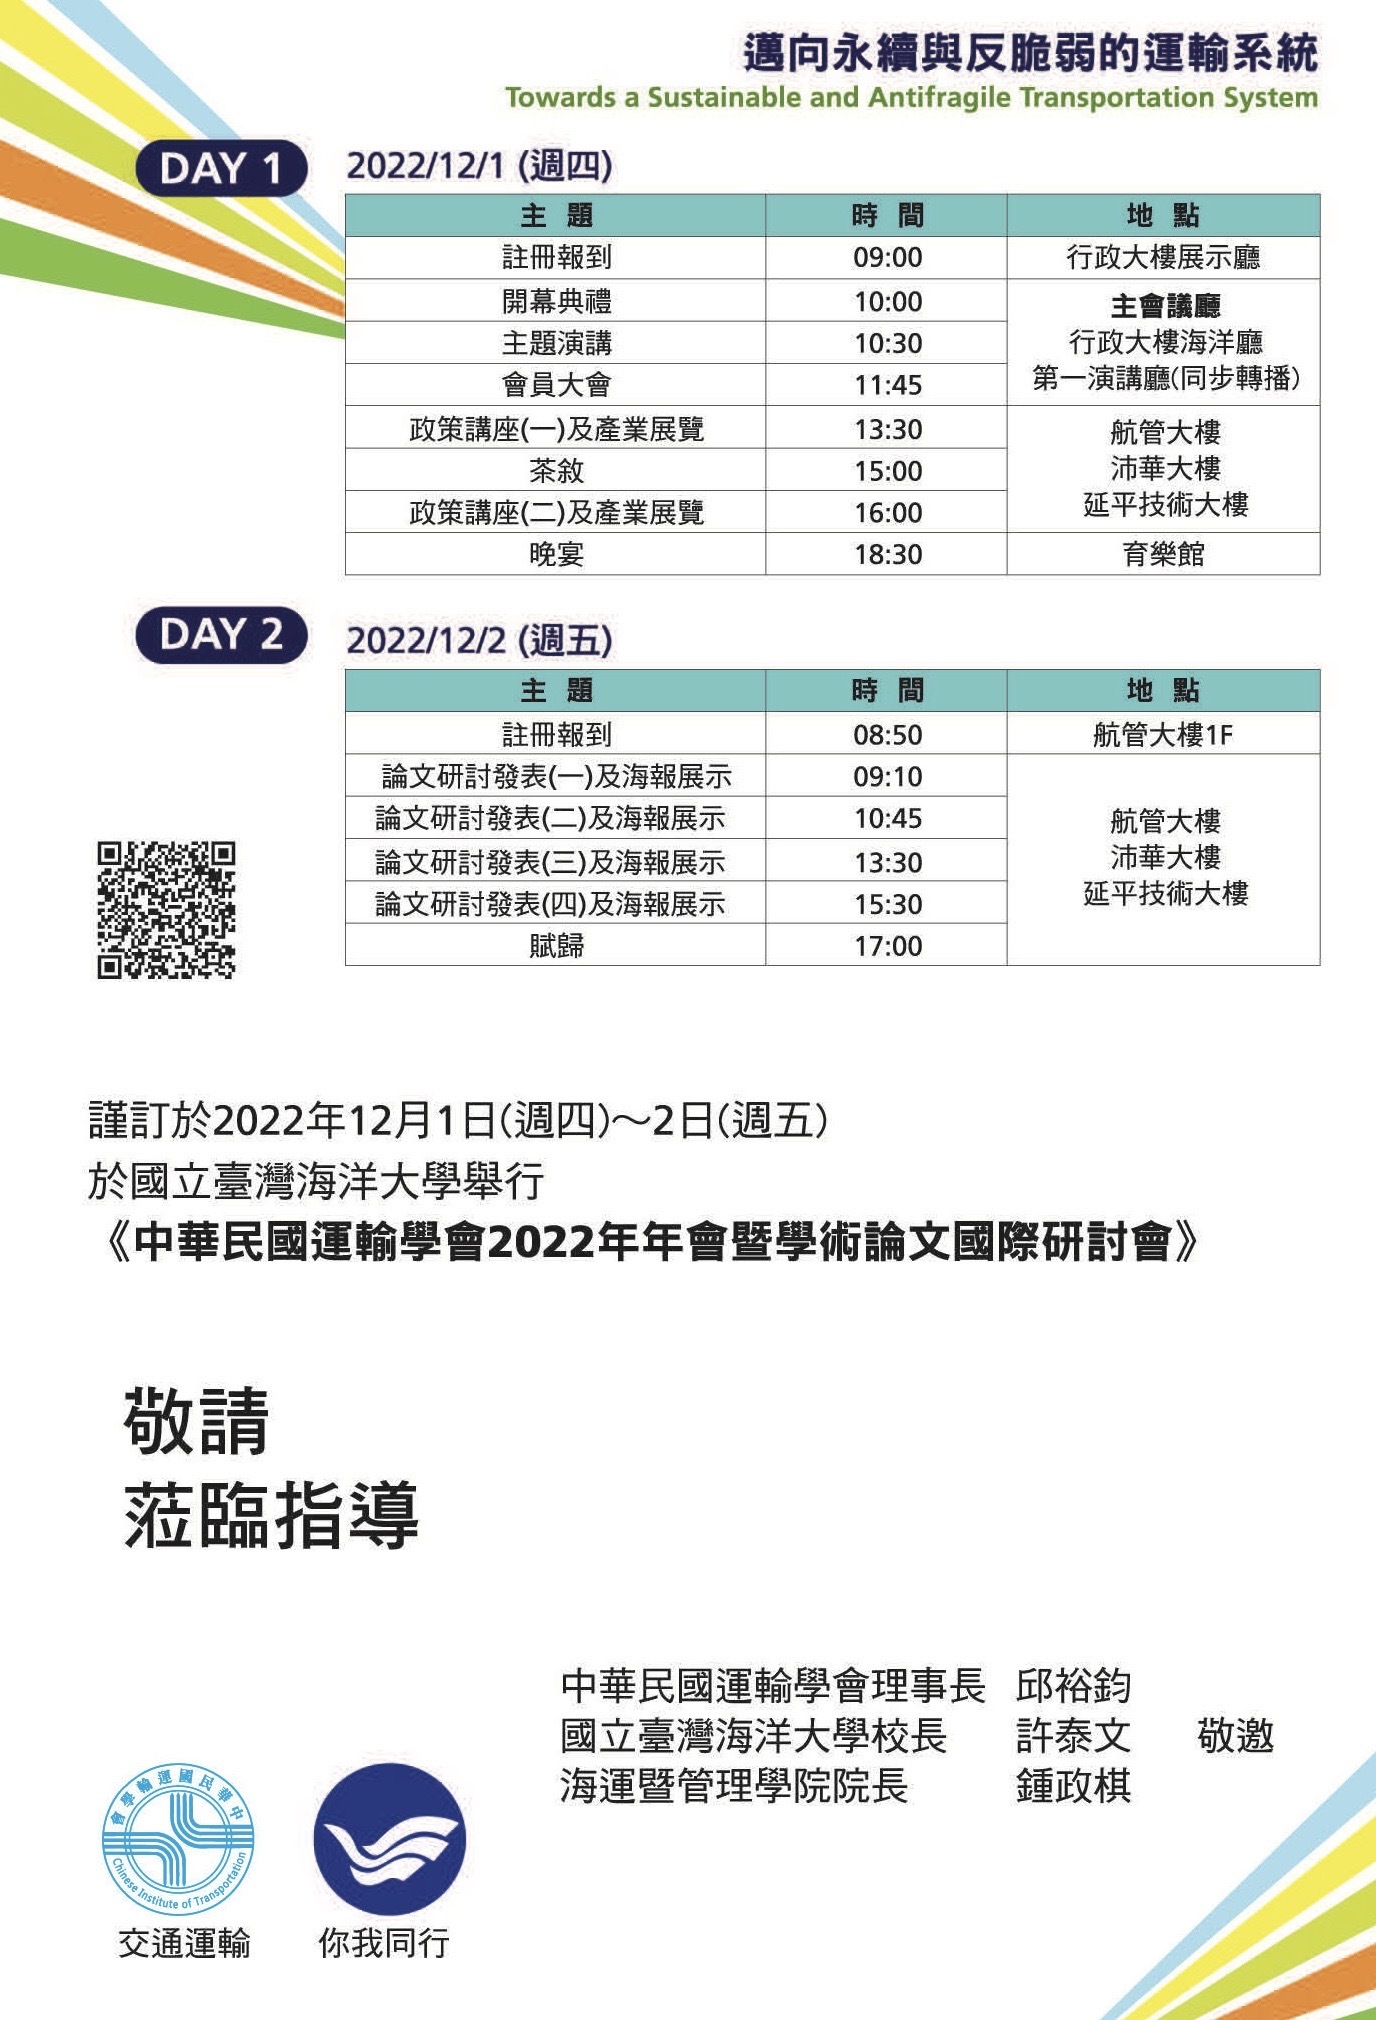 中華民國運輸學會2022年年會暨學術論文國際研討會